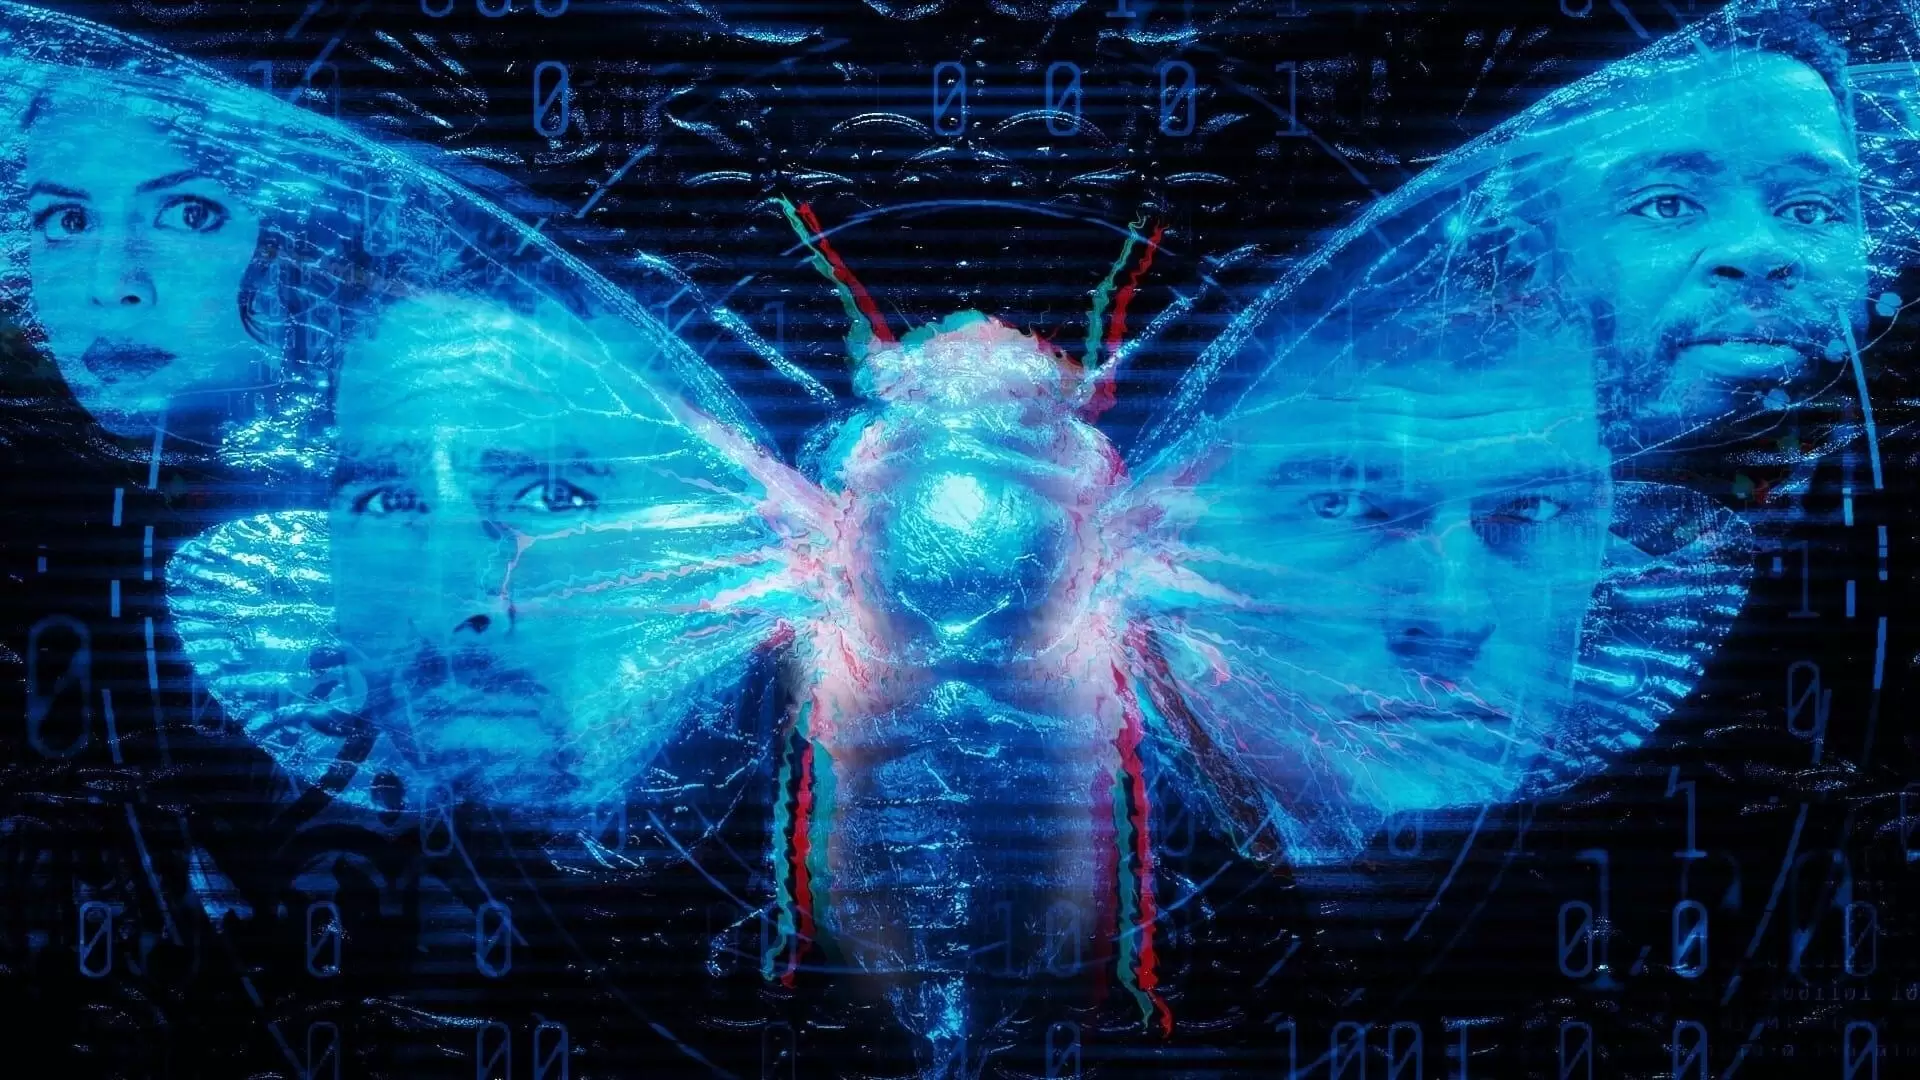 دانلود فیلم Dark Web: Cicada 3301 2021 (دارک وب: جیرجیرک) با زیرنویس فارسی و تماشای آنلاین